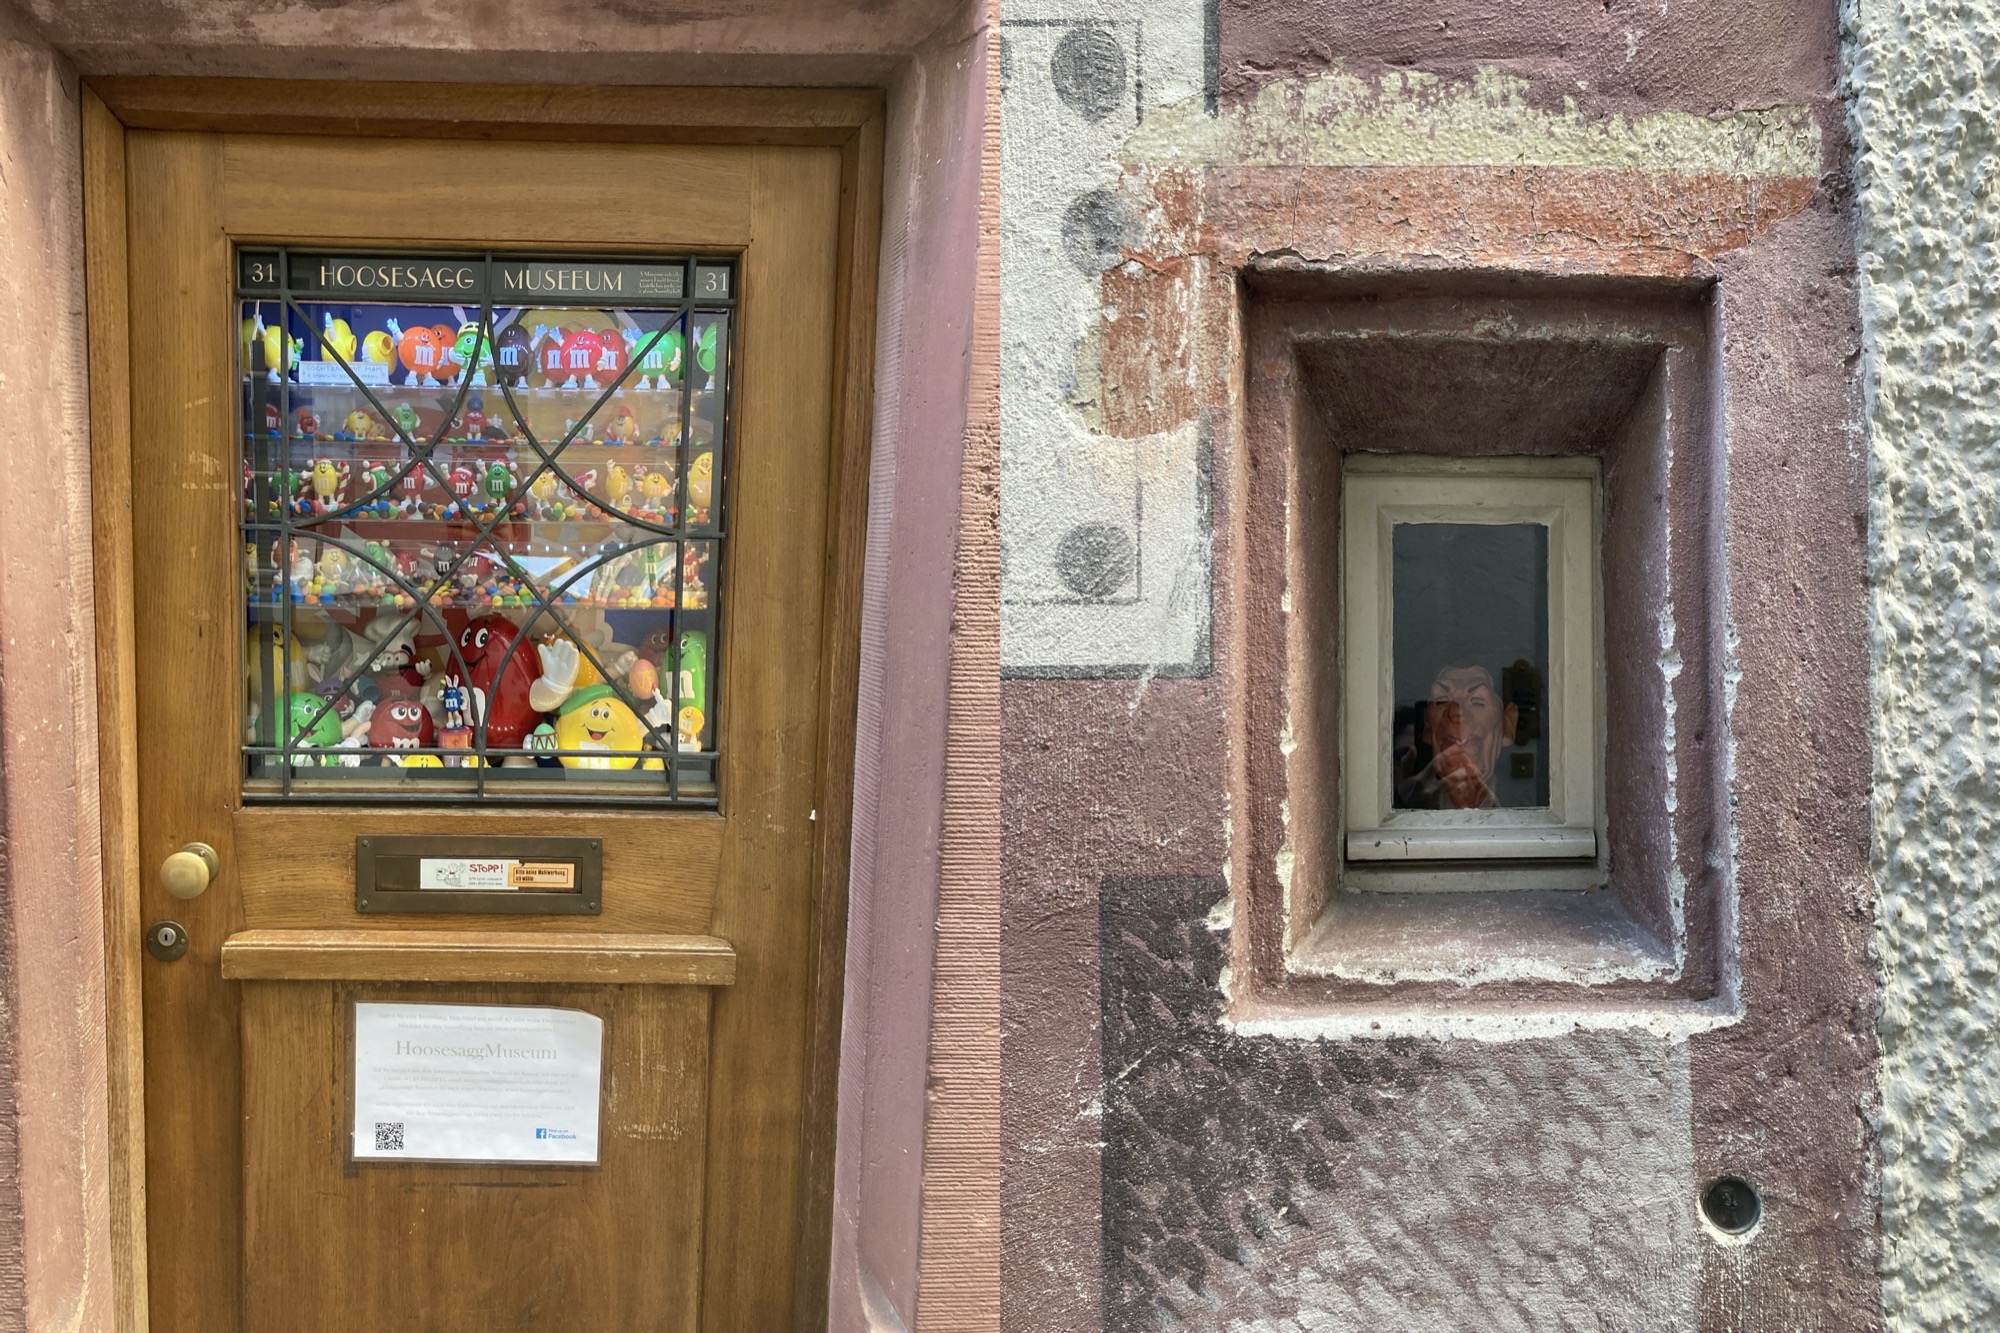 nebeneinander zwei Außenansichten des Hoosesaag Muuseum, links die hölzerne Eingangstür, im oberen verglasten Teil sind verschiedene M&M-Figuren hinter der Glasscheibe zu sehen, rechts ein schmales porträtförmiges Fenster in der Wand, hinter dem ein Plastikkopf zu erahnen ist